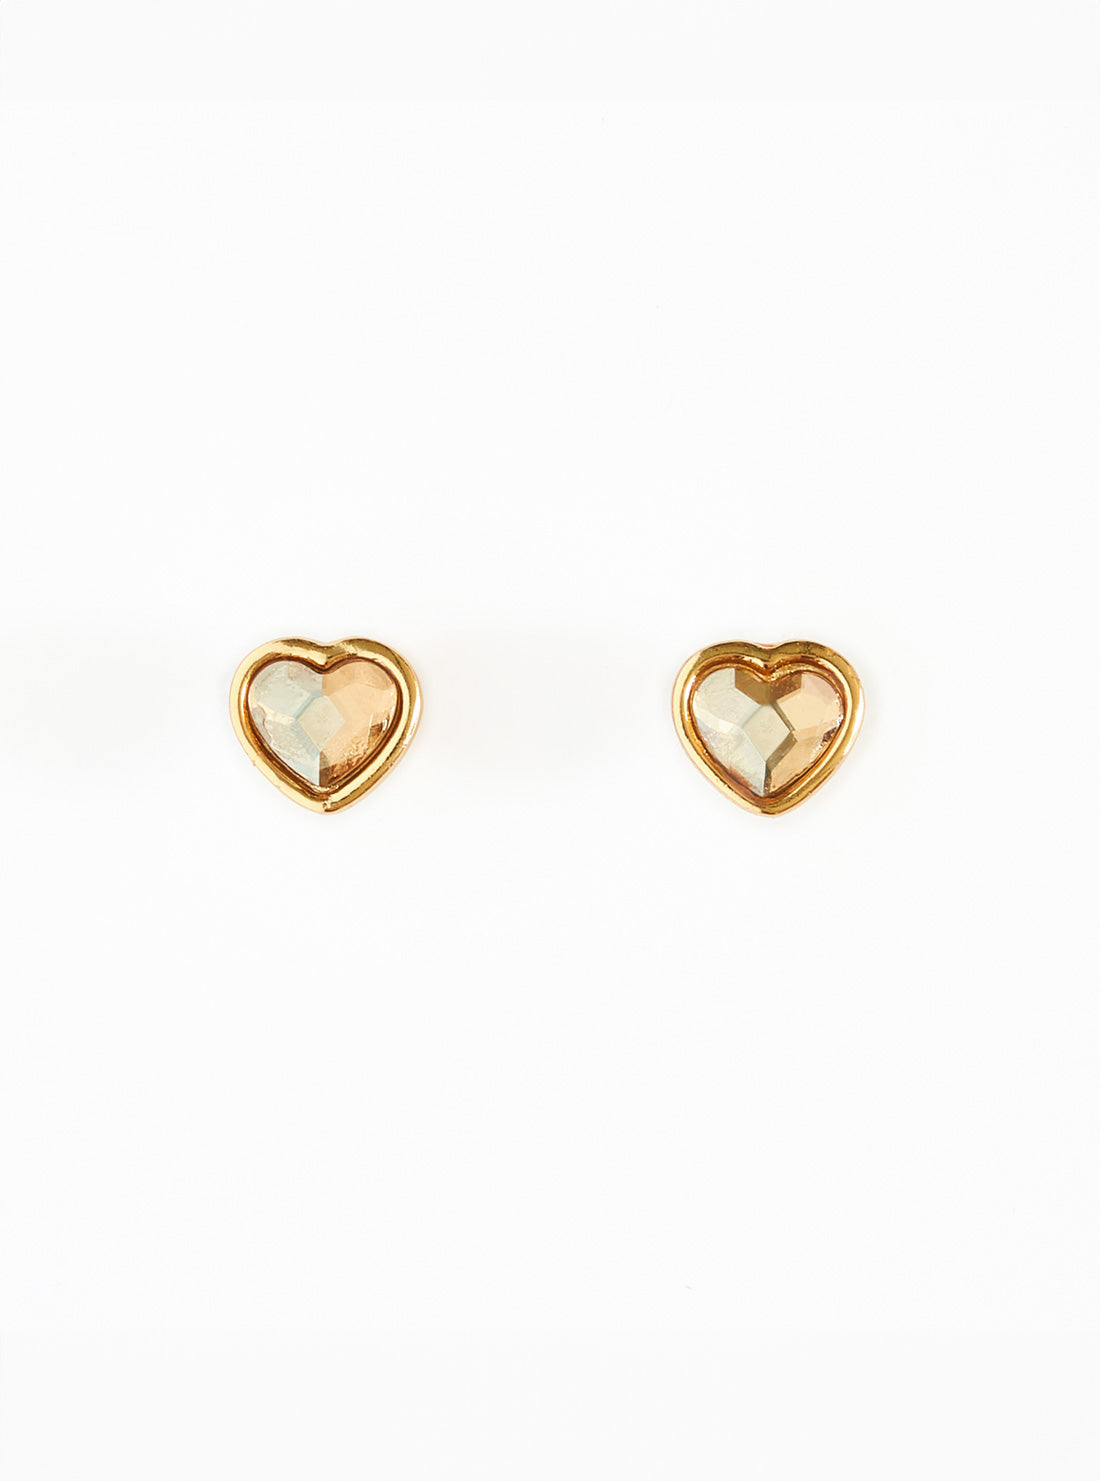 Truly love earrings gold